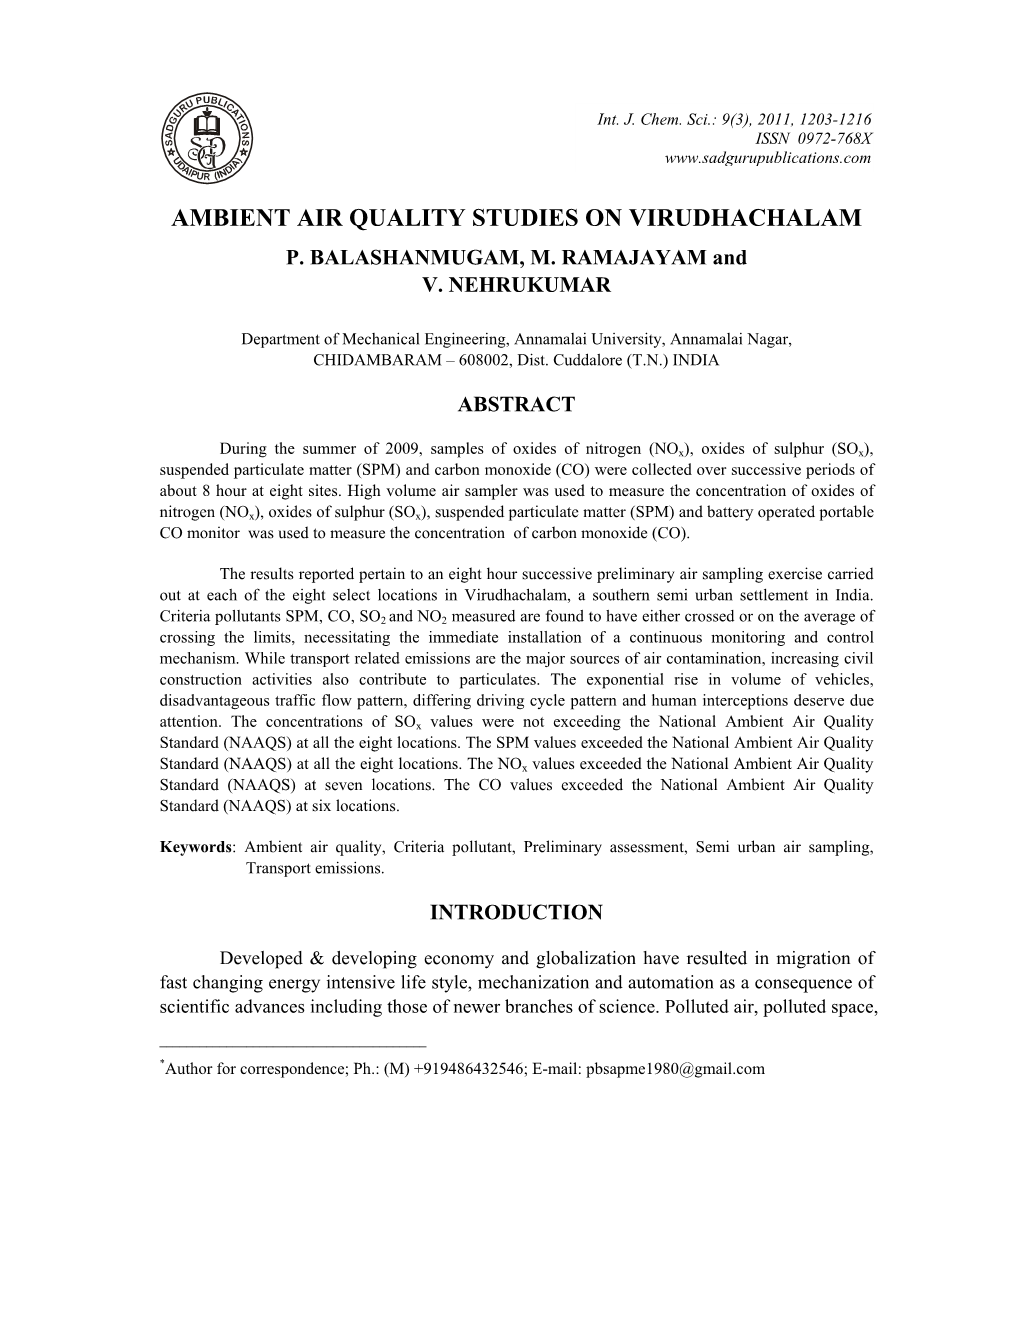 Ambient Air Quality Studies on Virudhachalam P